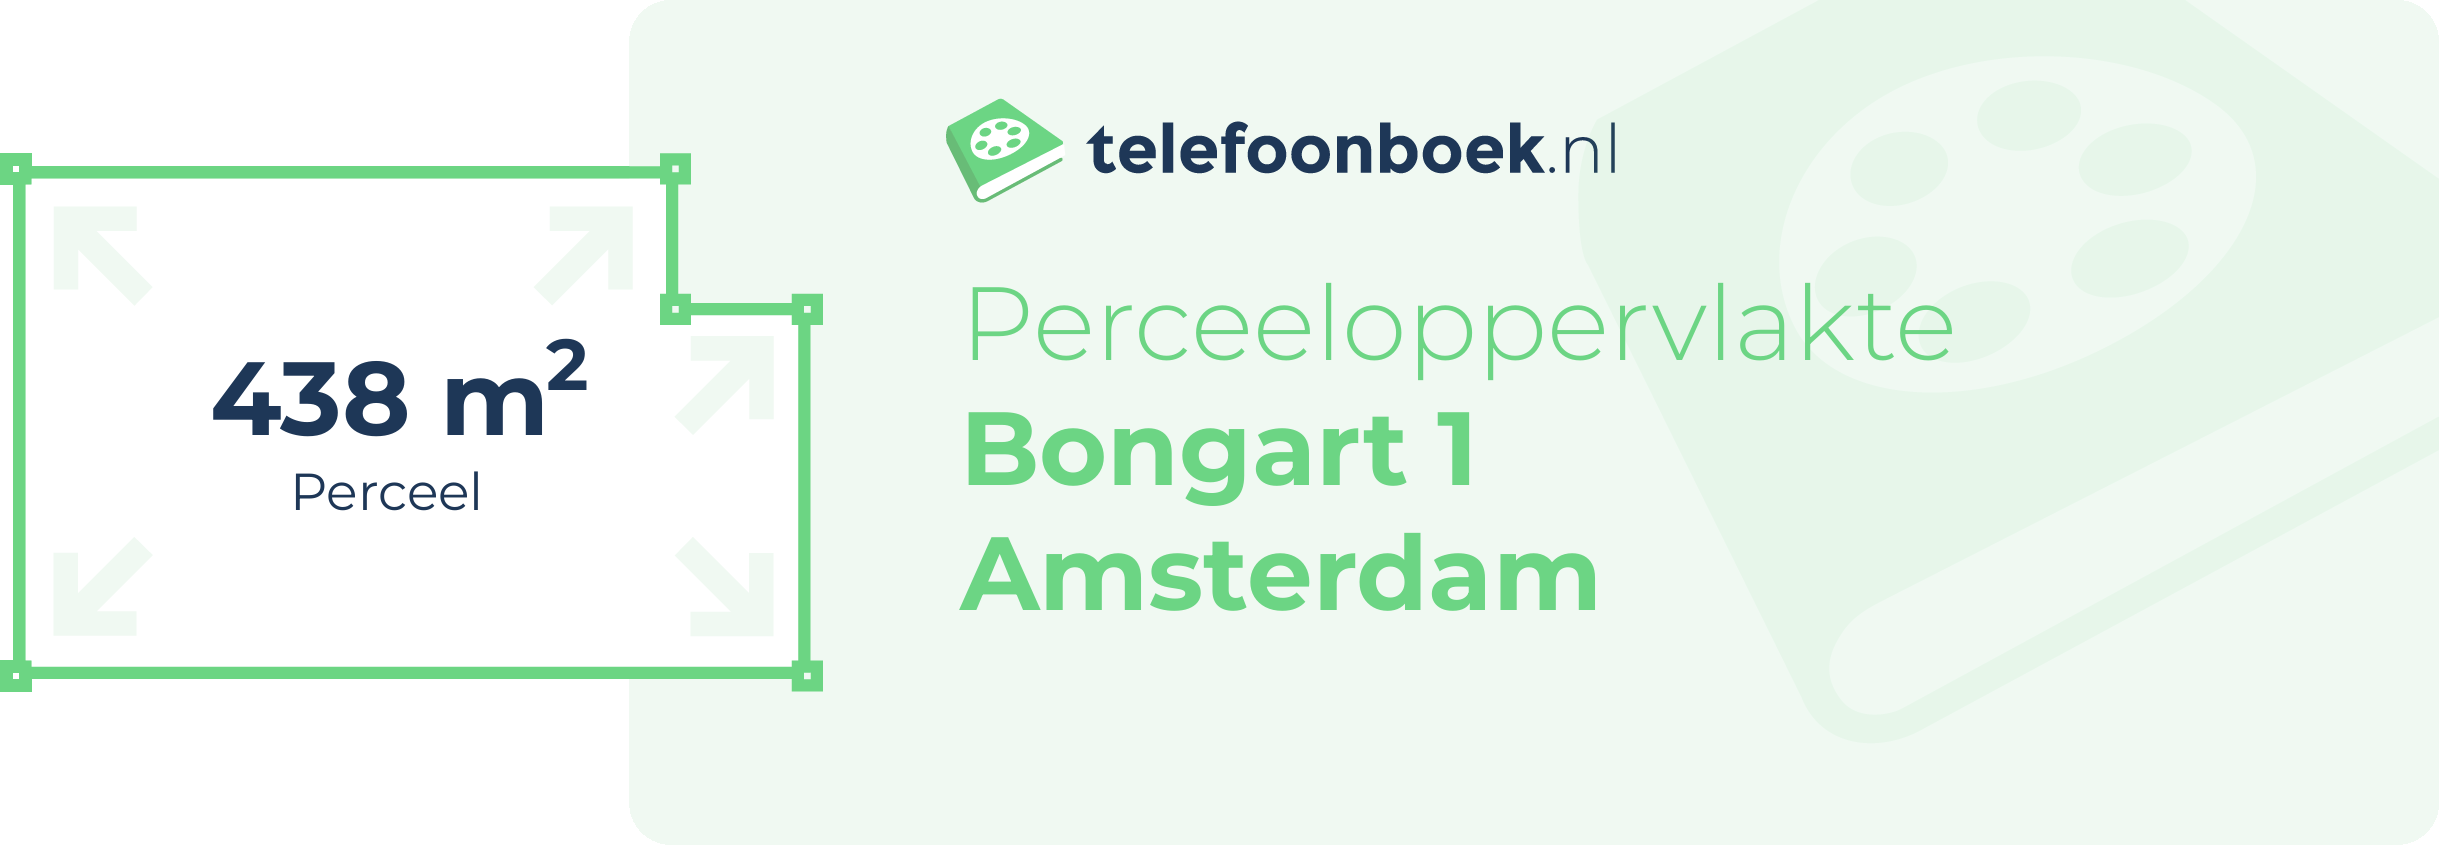 Perceeloppervlakte Bongart 1 Amsterdam